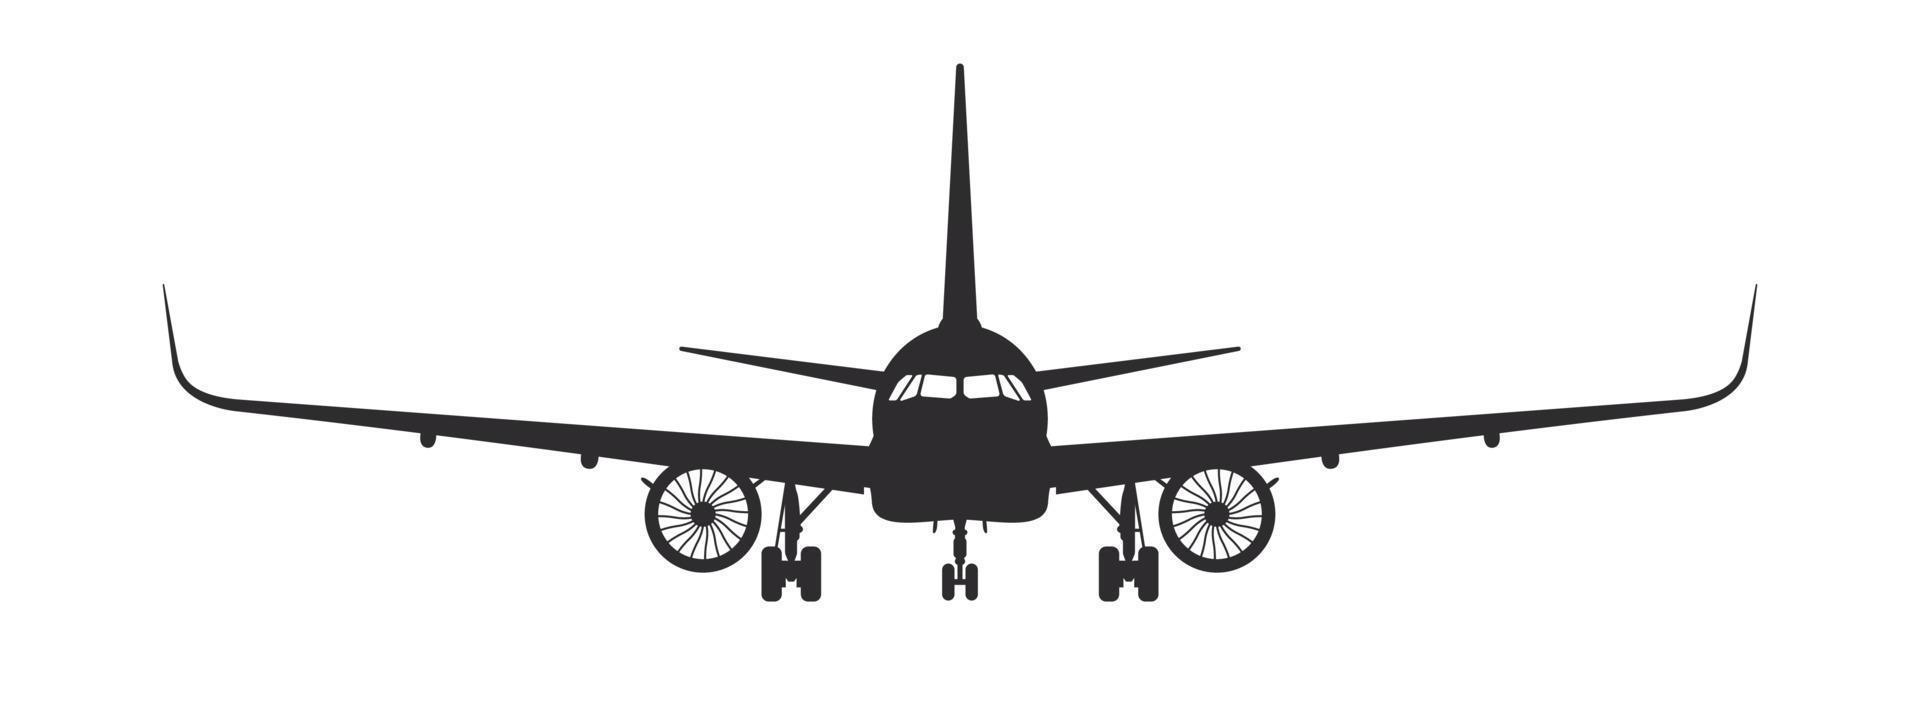 Flugzeug. Vorderansicht der Flugzeugsilhouette. Passagierflugzeug-Konzept. Vektorbild vektor